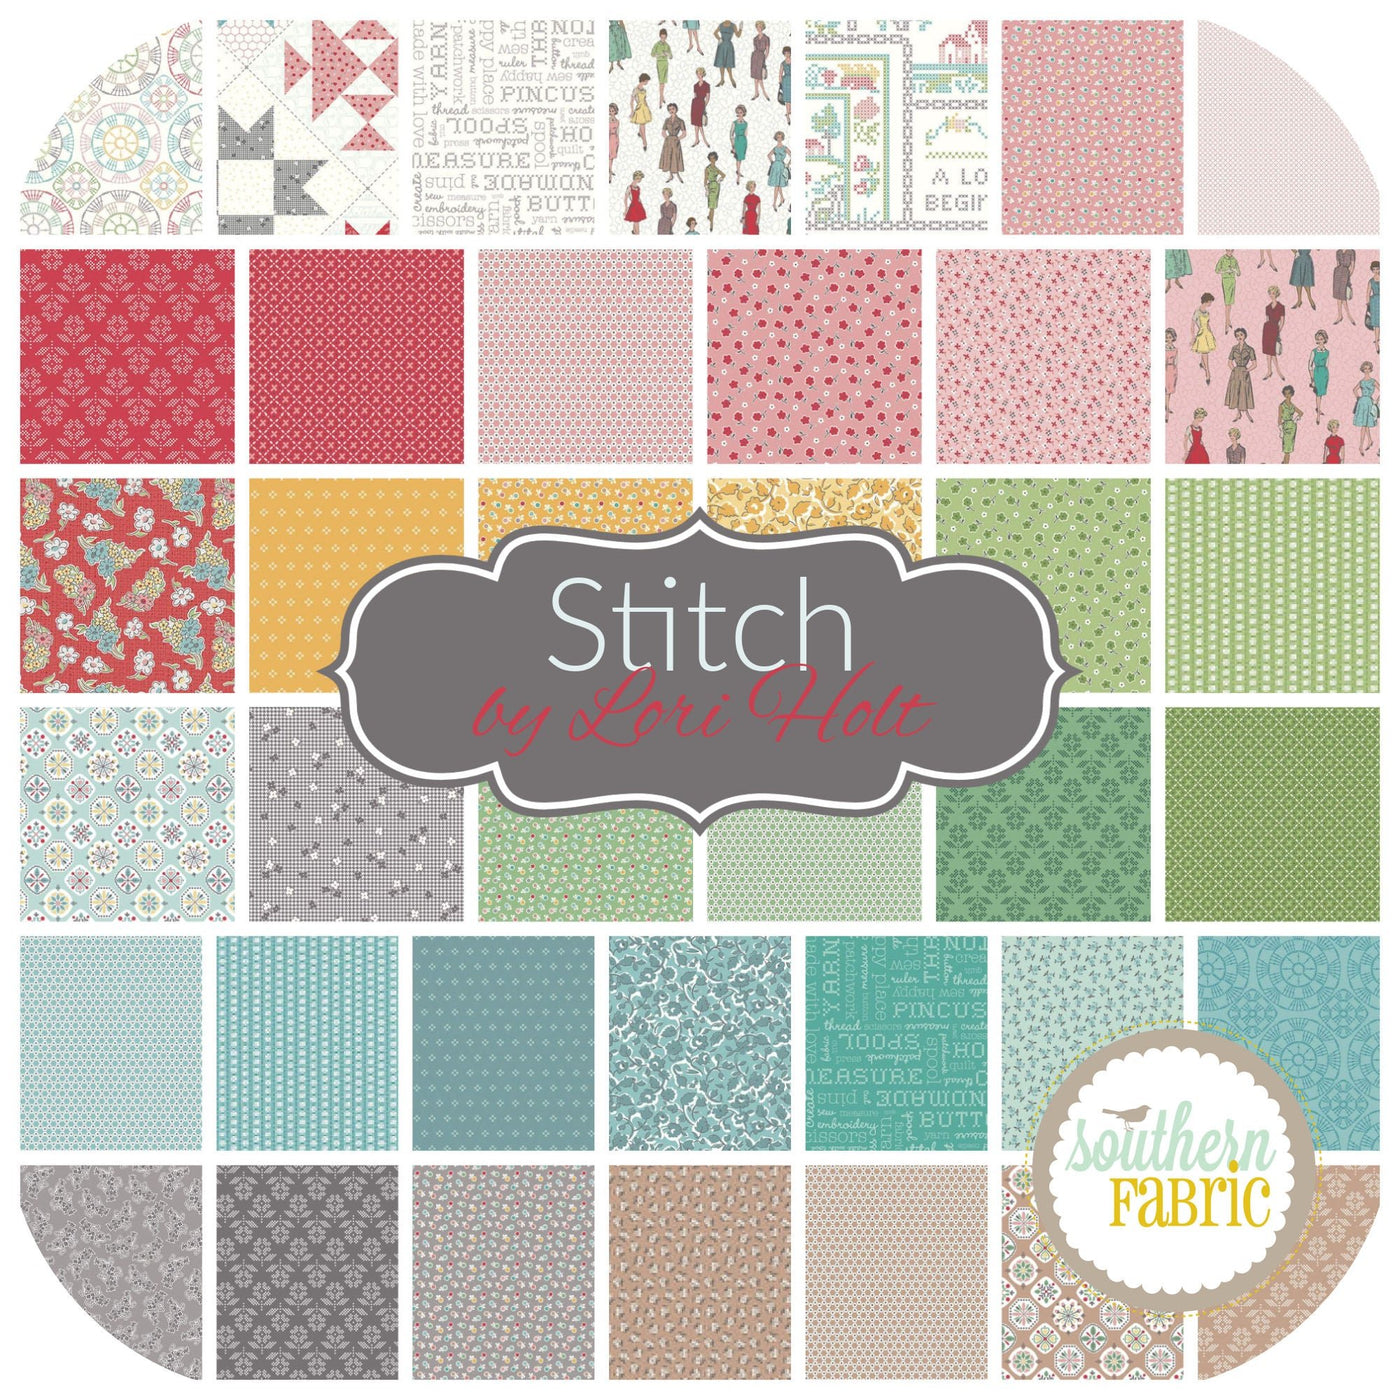 Stitch Fat Quarter Bundle (42 pcs) by Lori Holt for Riley Blake